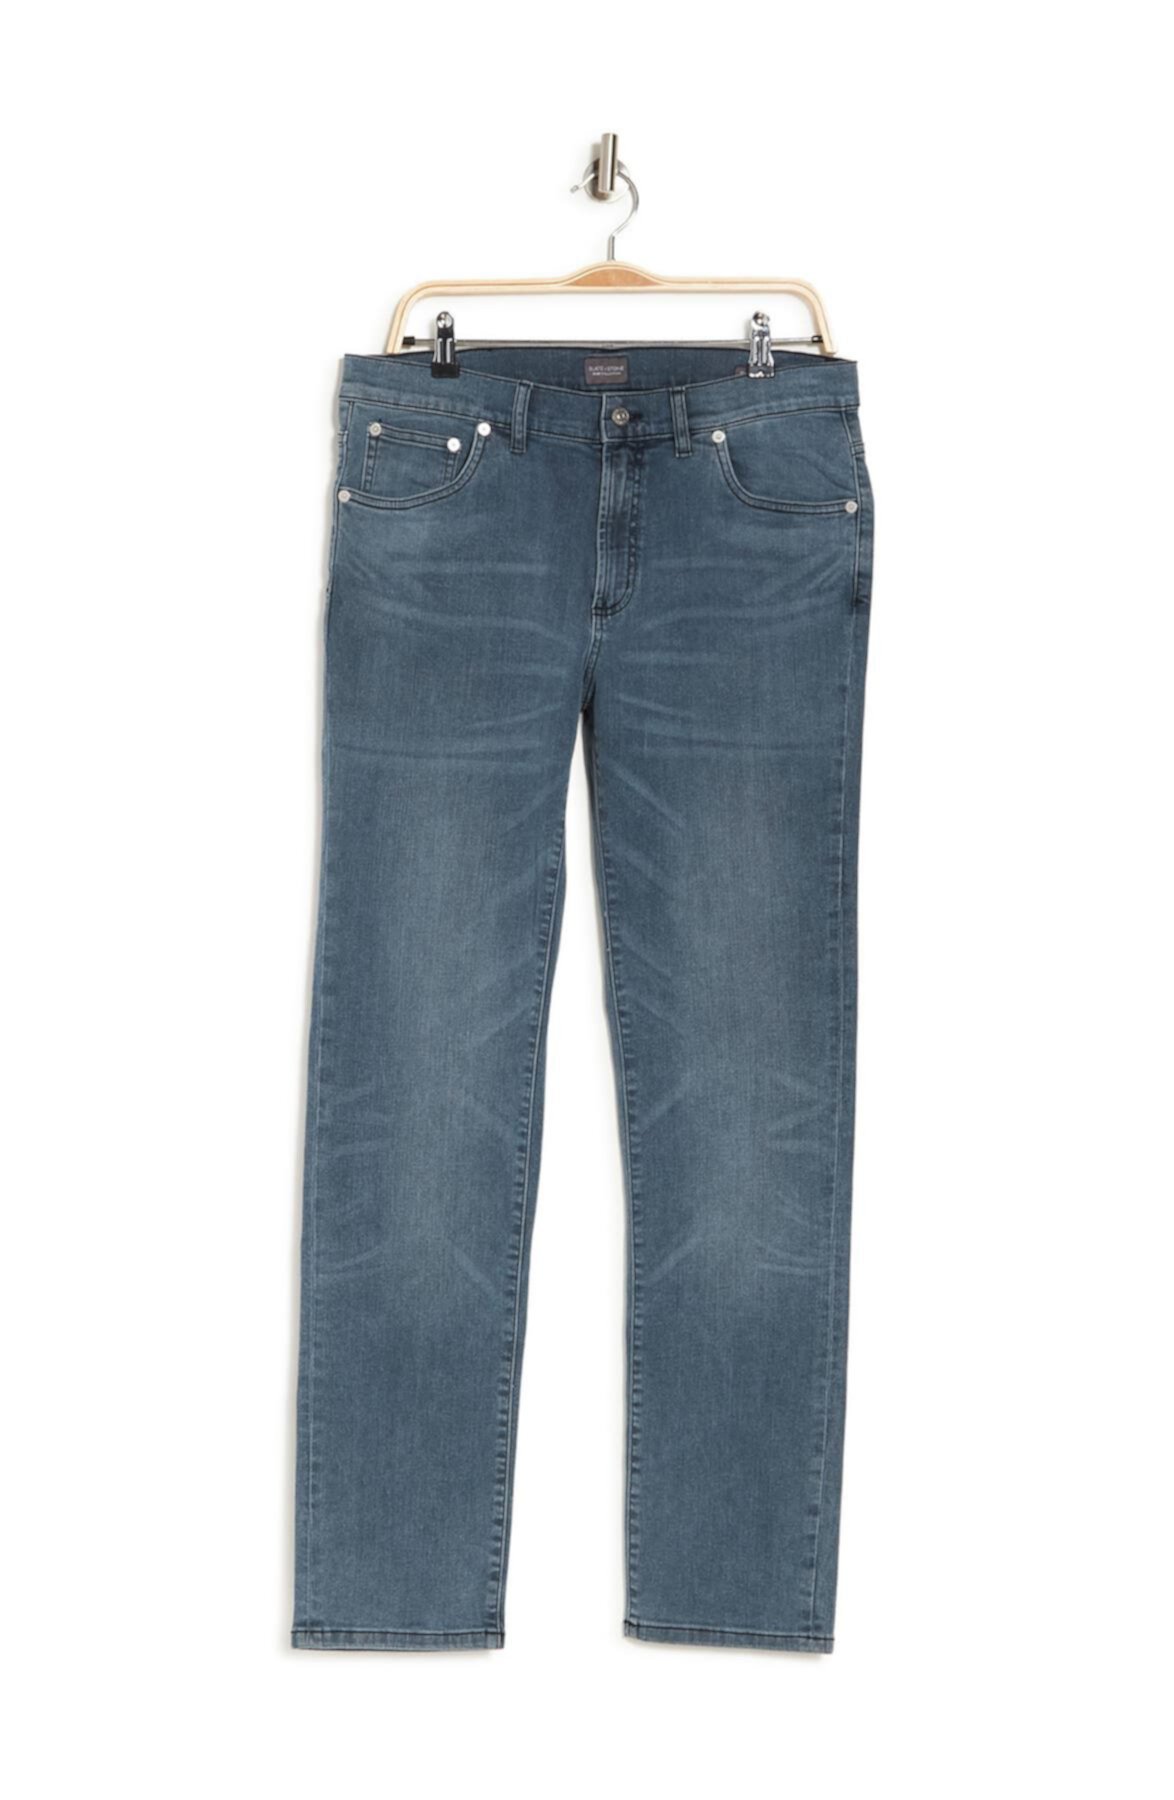 Джинсовые джинсы Sloan Slim Fit Slate & Stone